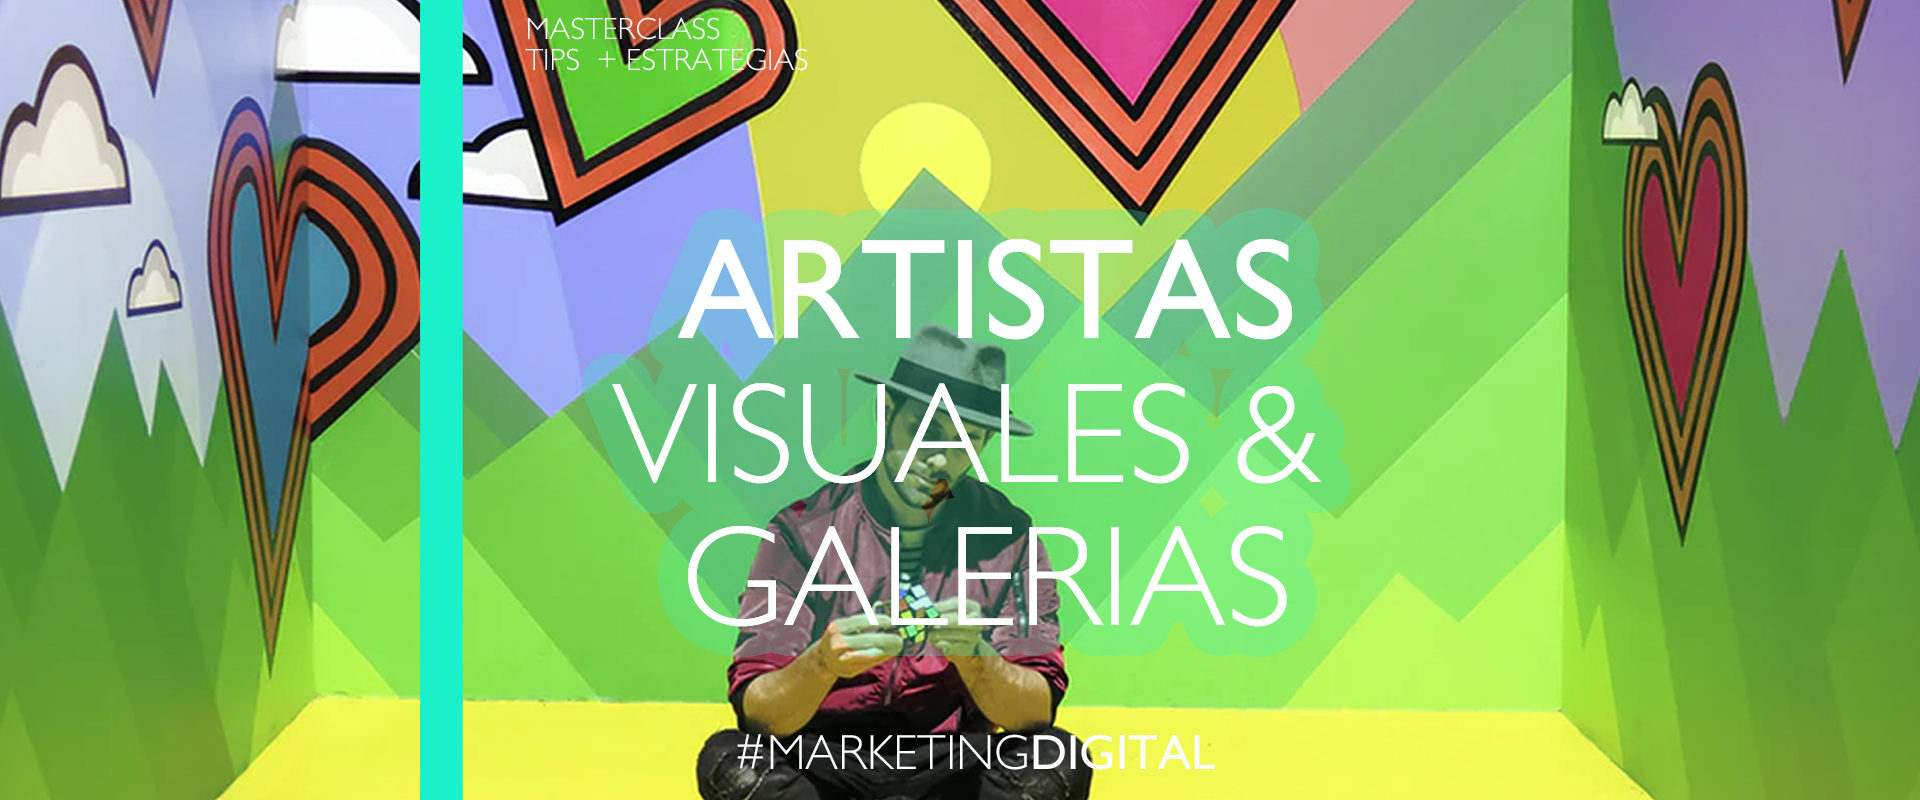 masterclass marketing artistas visuales y galerías de arte